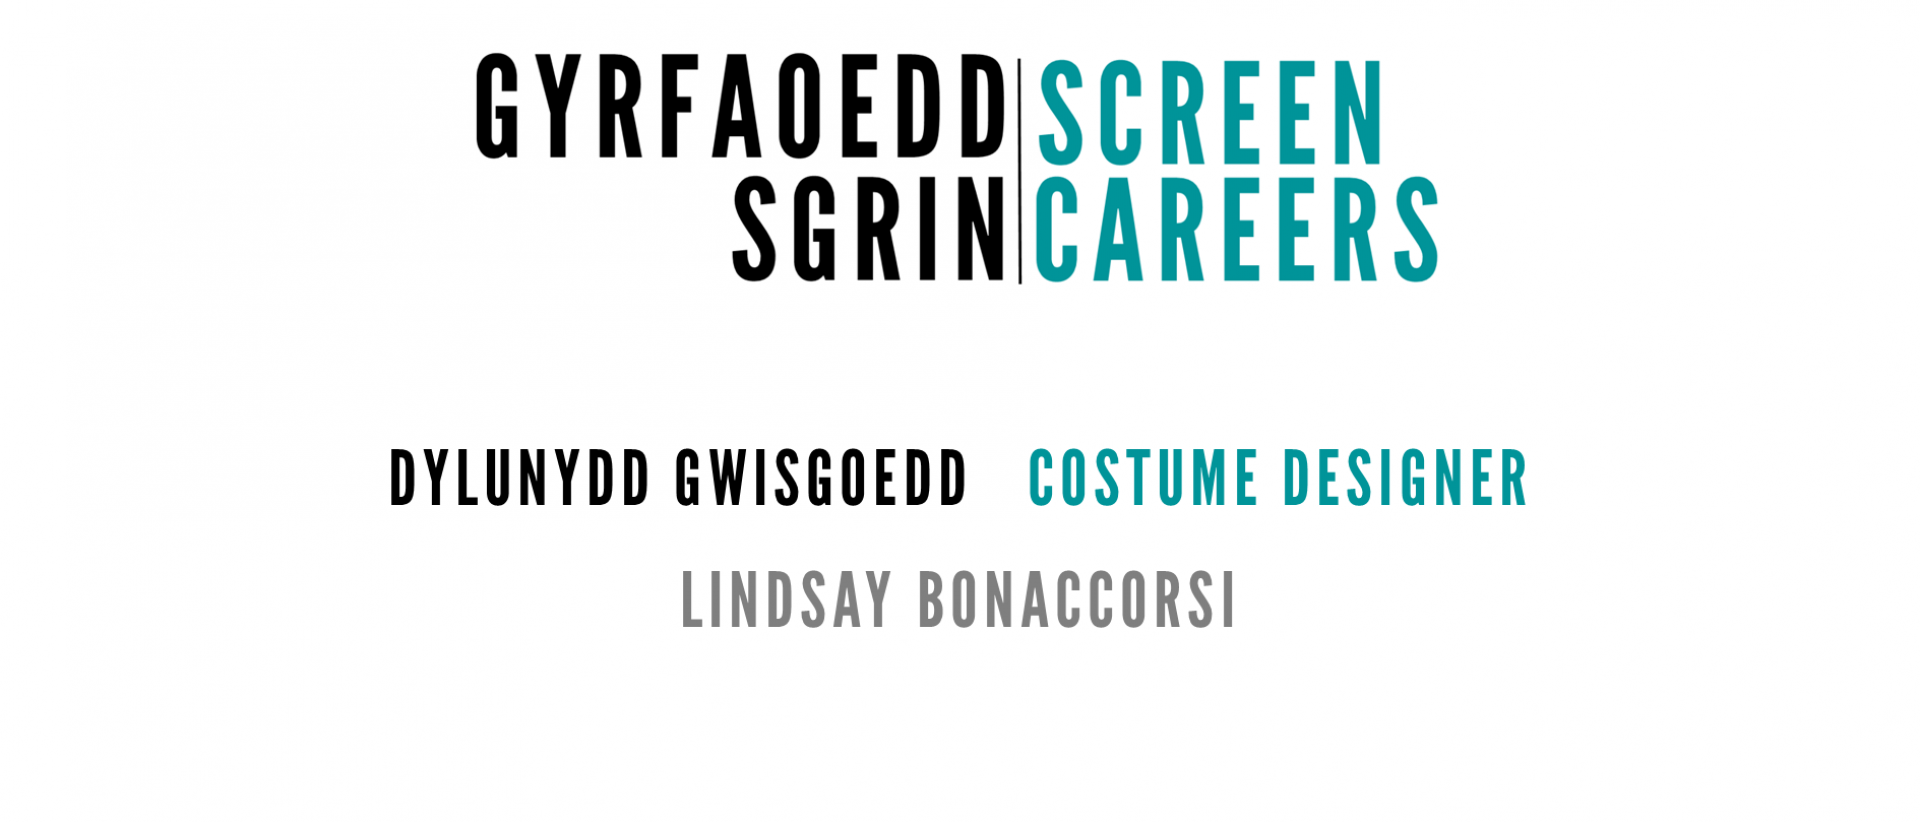 screen careers logo